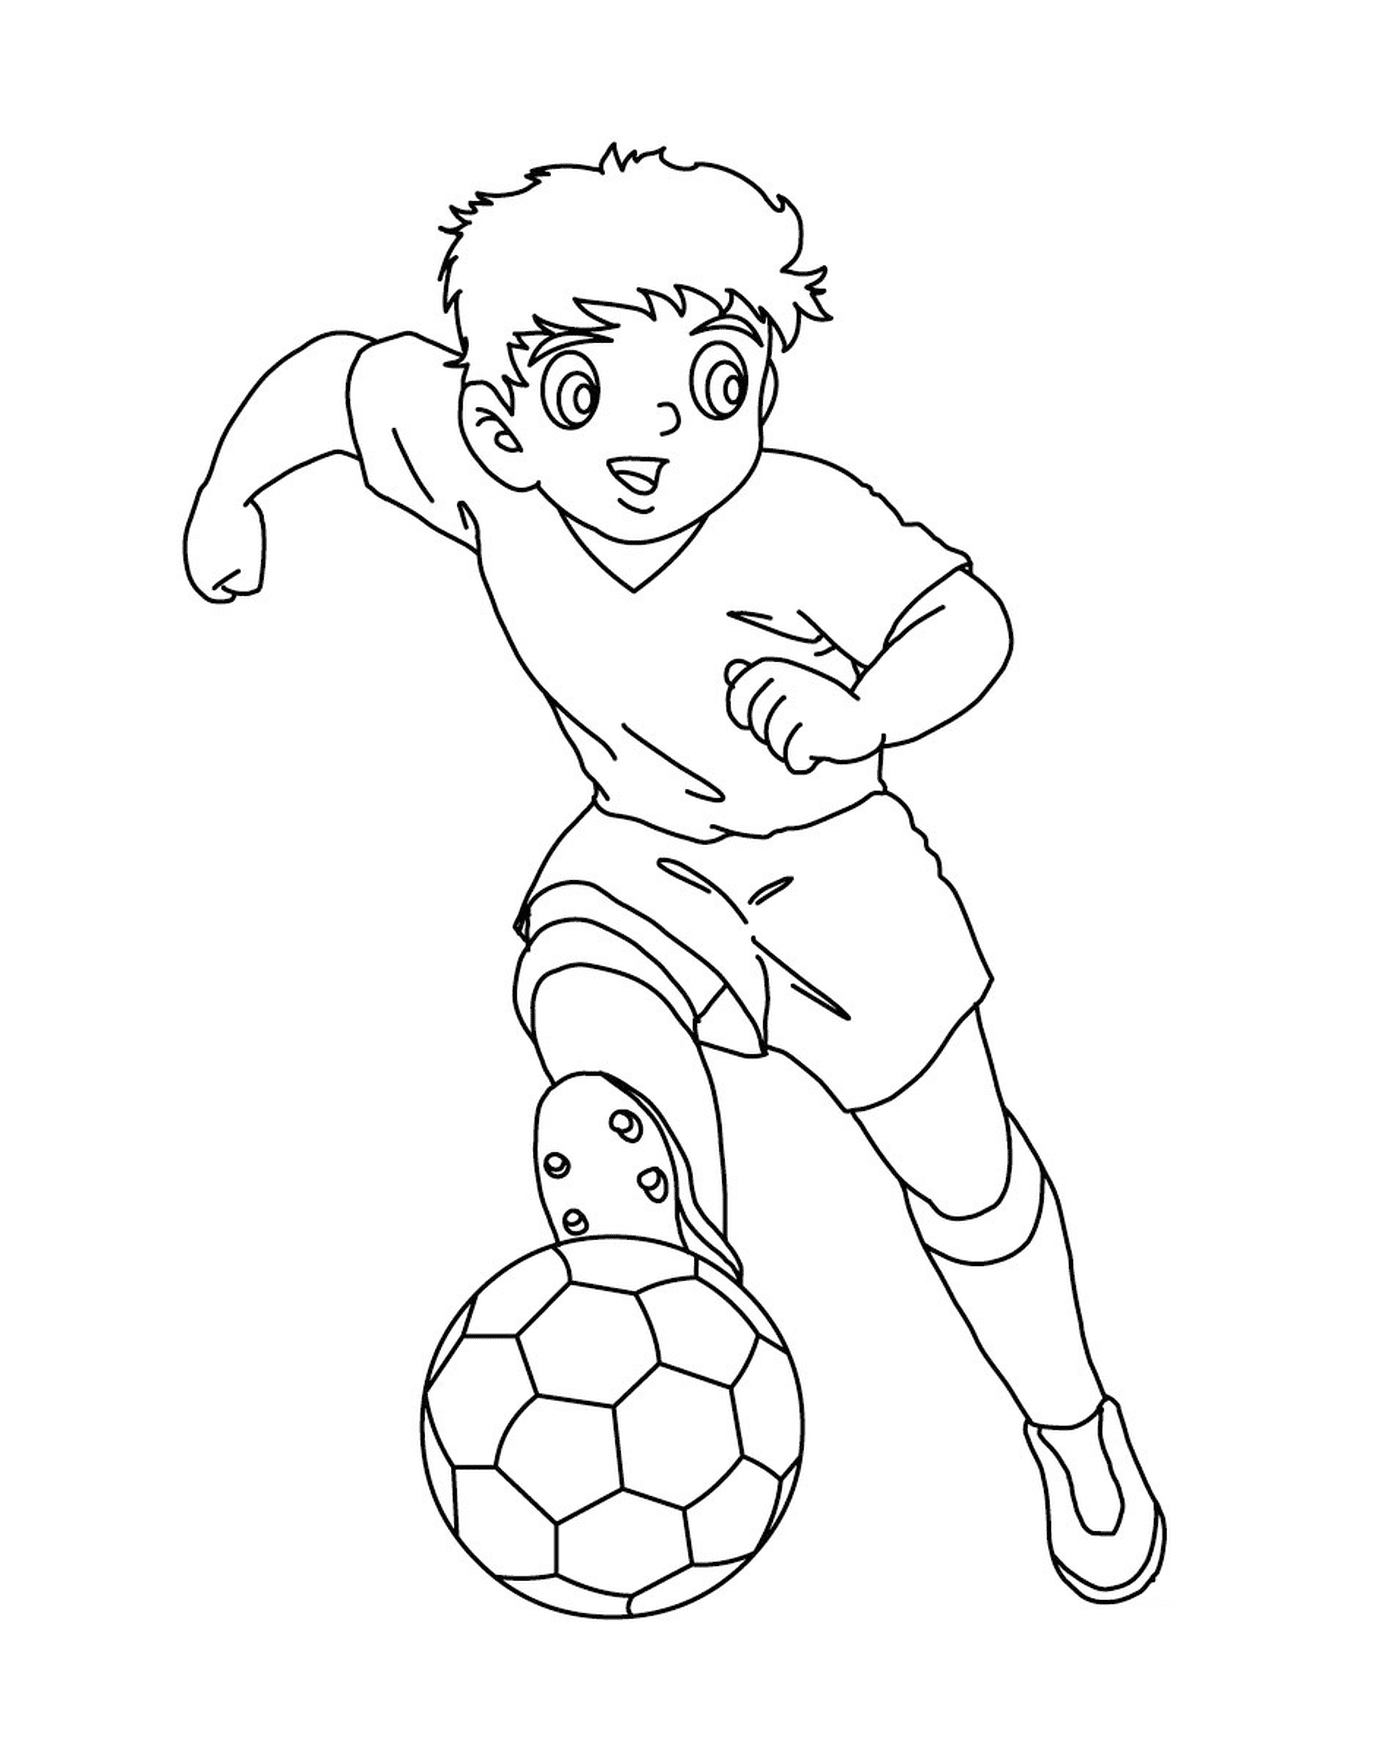  Junge spielen Fußball wie Kapitän Tsubasa 